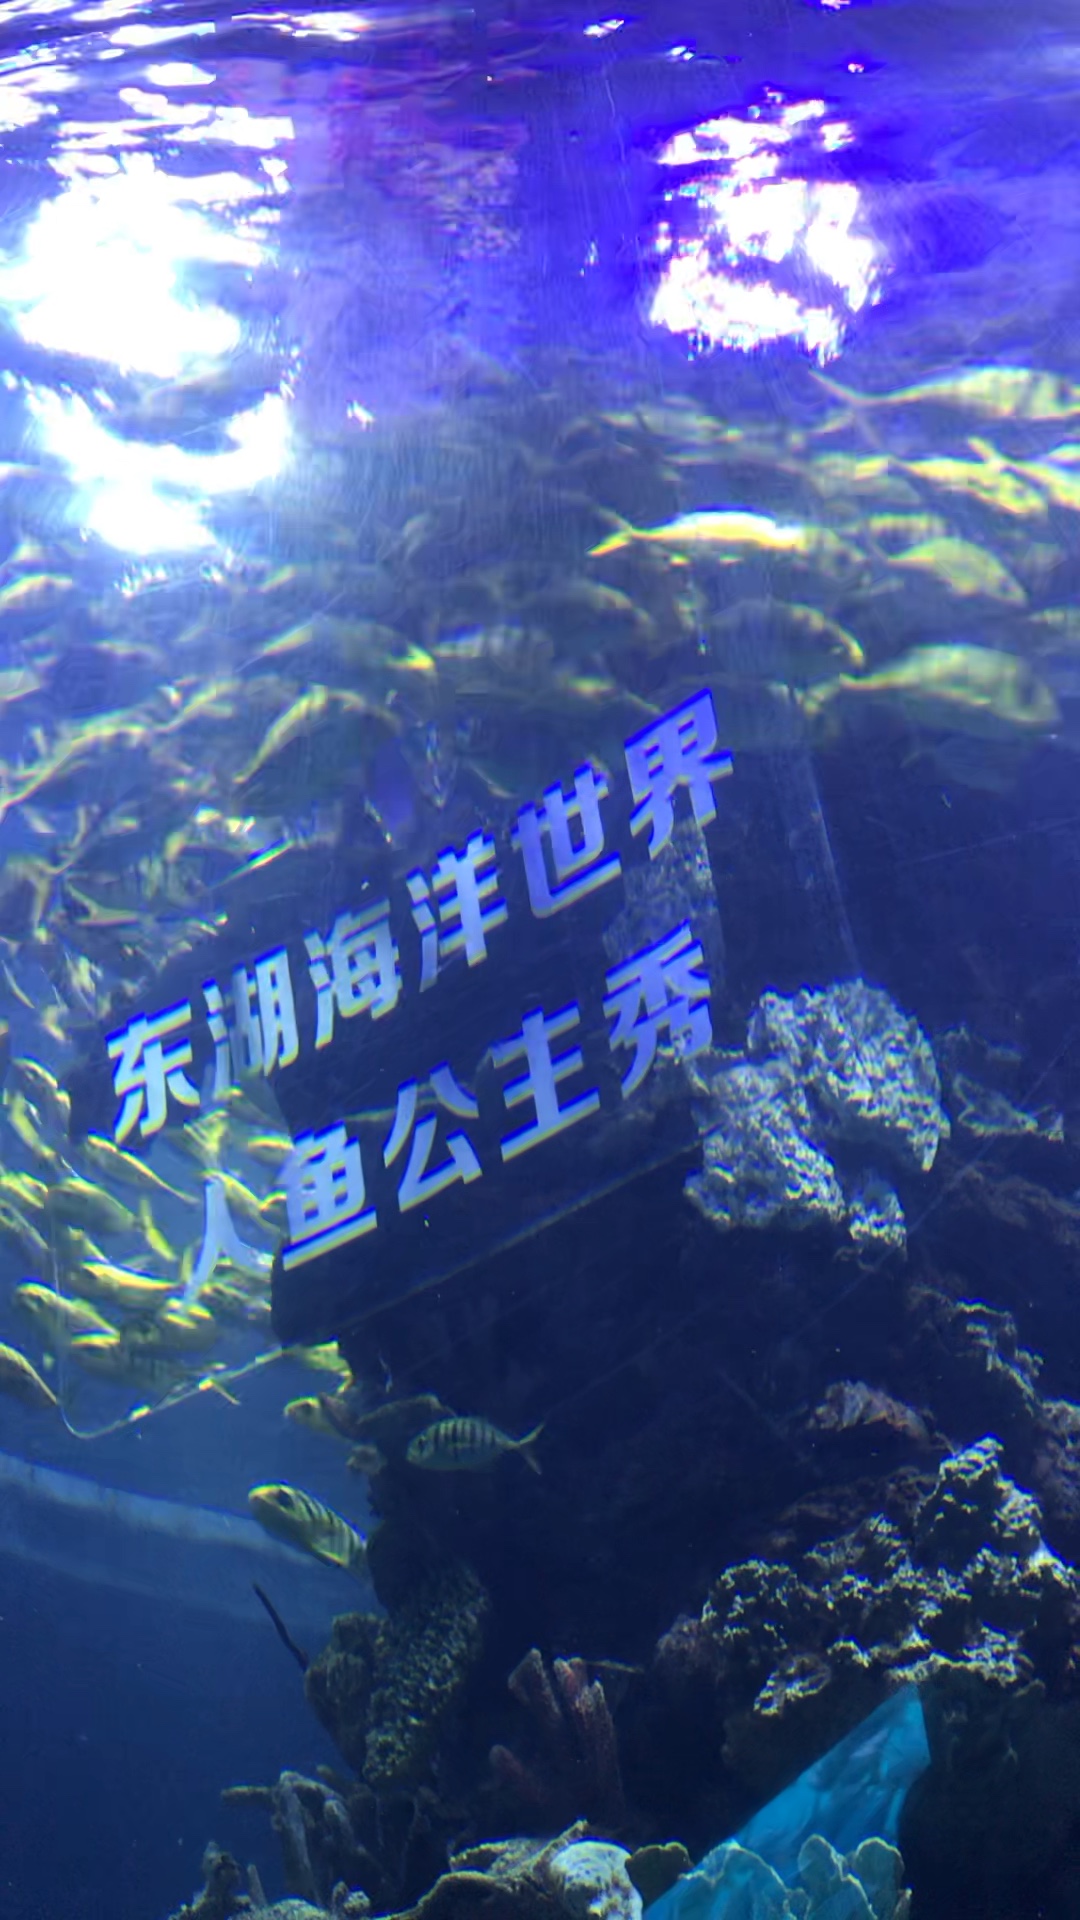 武汉国博海洋乐园进展图片